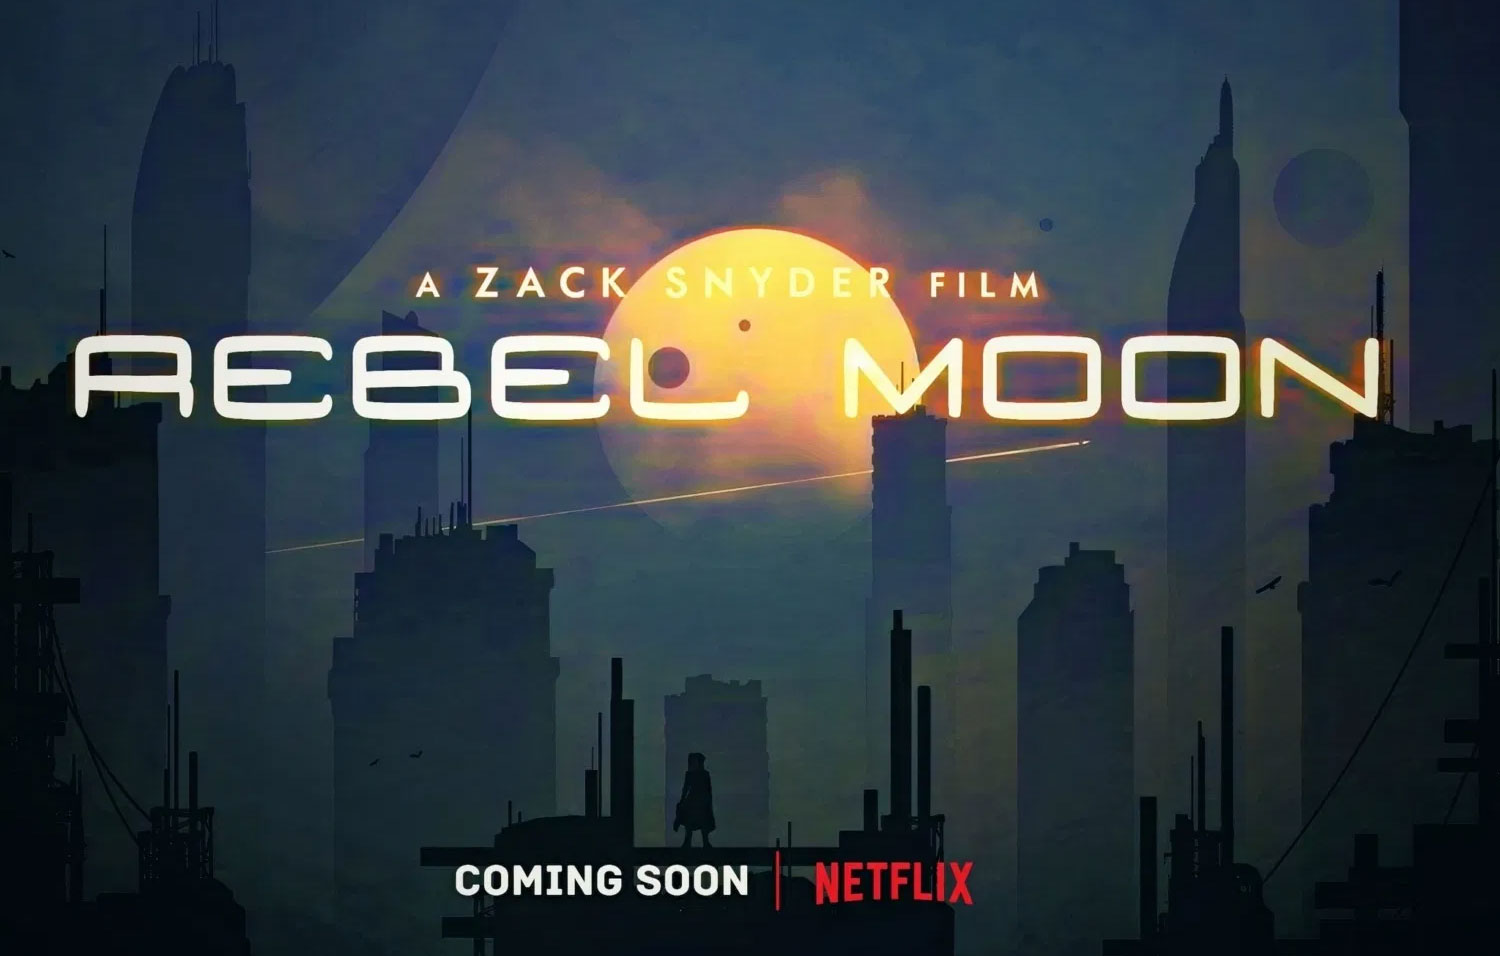 Rebel Moon la próxima película de Zack Snyder para Netflix